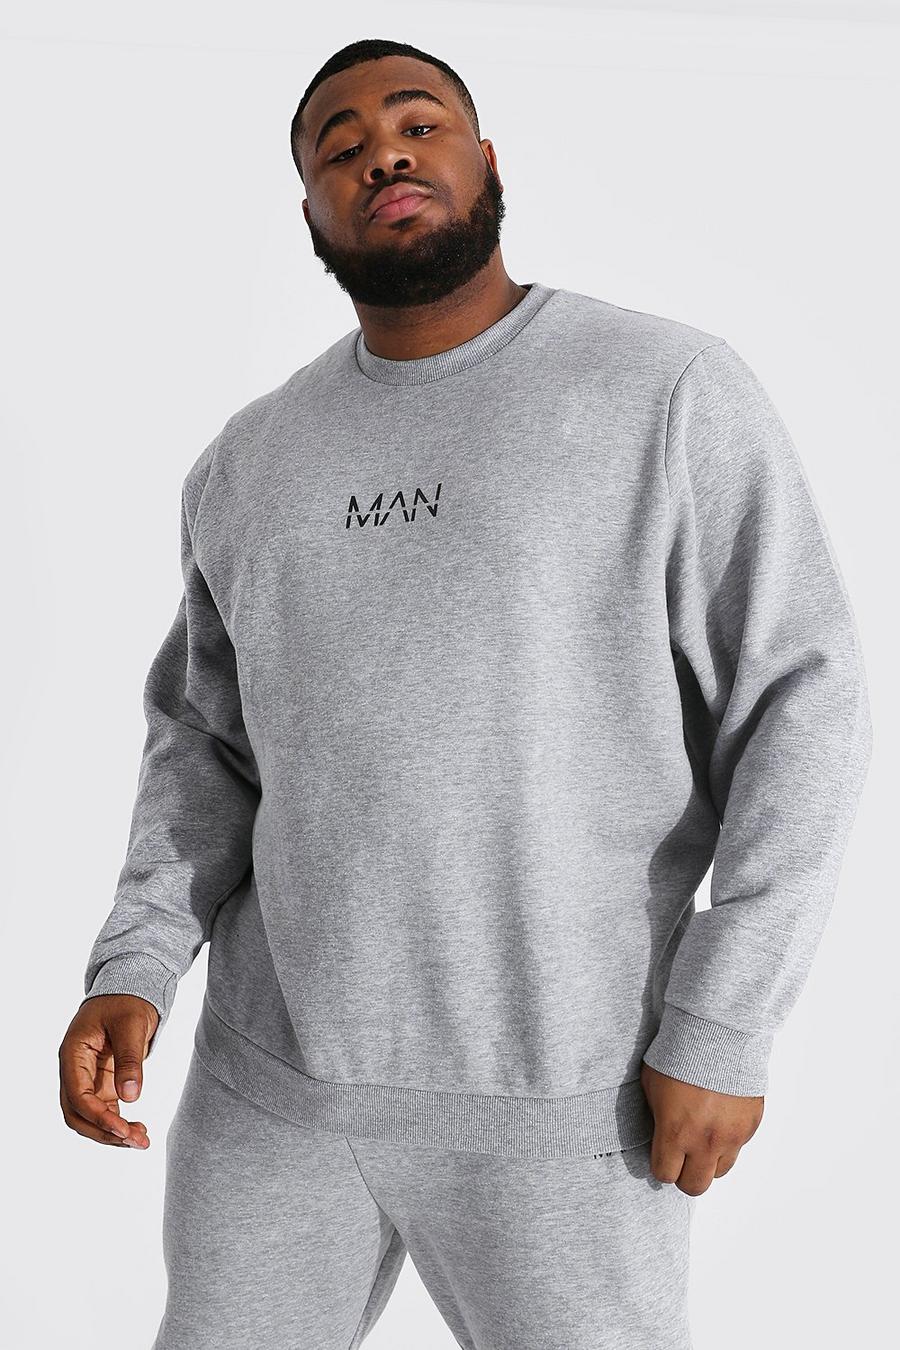 Plus Man-Dash Sweatshirt, Grey marl image number 1